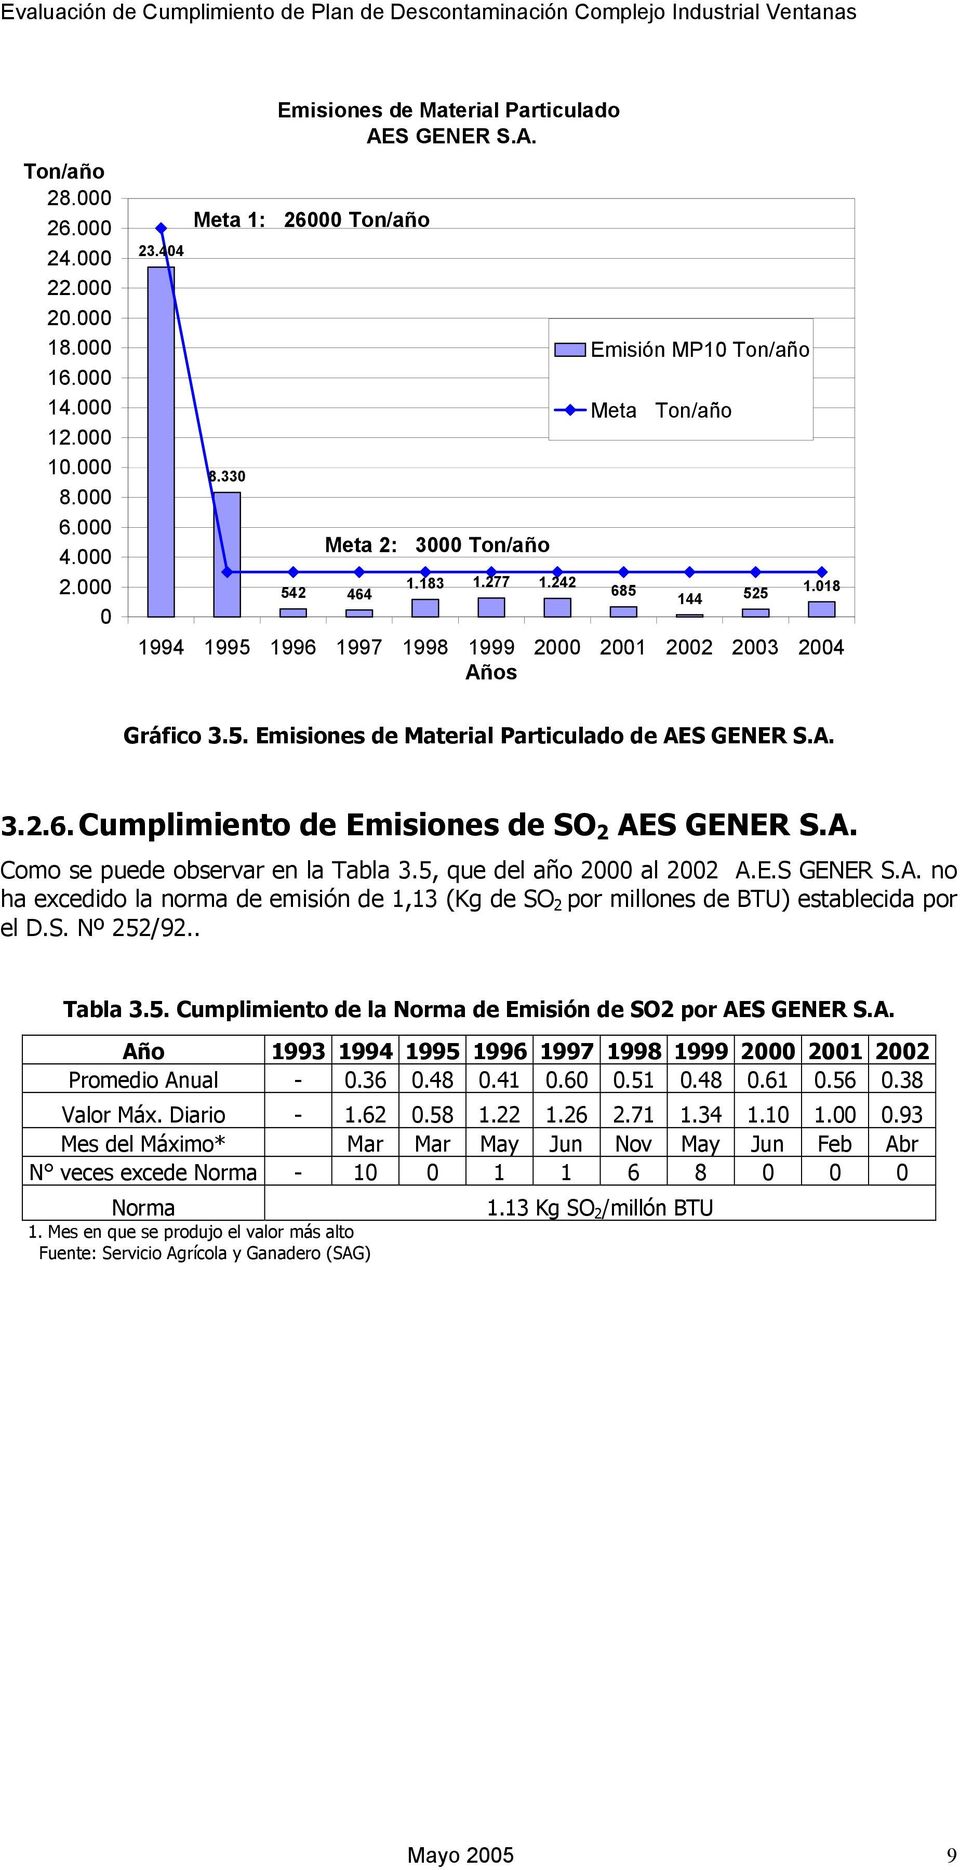 A. Como se puede observar en la Tabla 3.5, que del año 2 al 22 A.E.S GENER S.A. no ha excedido la norma de emisión de 1,13 (Kg de SO 2 por millones de BTU) establecida por el D.S. Nº 252/92.. Tabla 3.5. Cumplimiento de la Norma de Emisión de SO2 por AES GENER S.